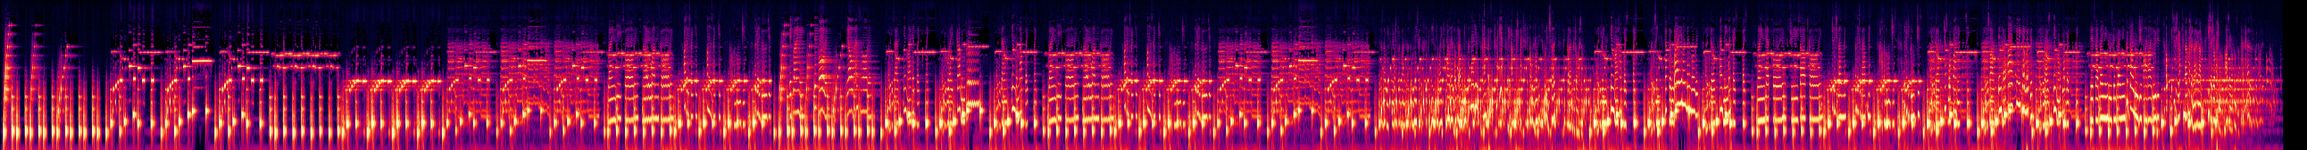 Moogies Bloogies - Spectrogram.jpg